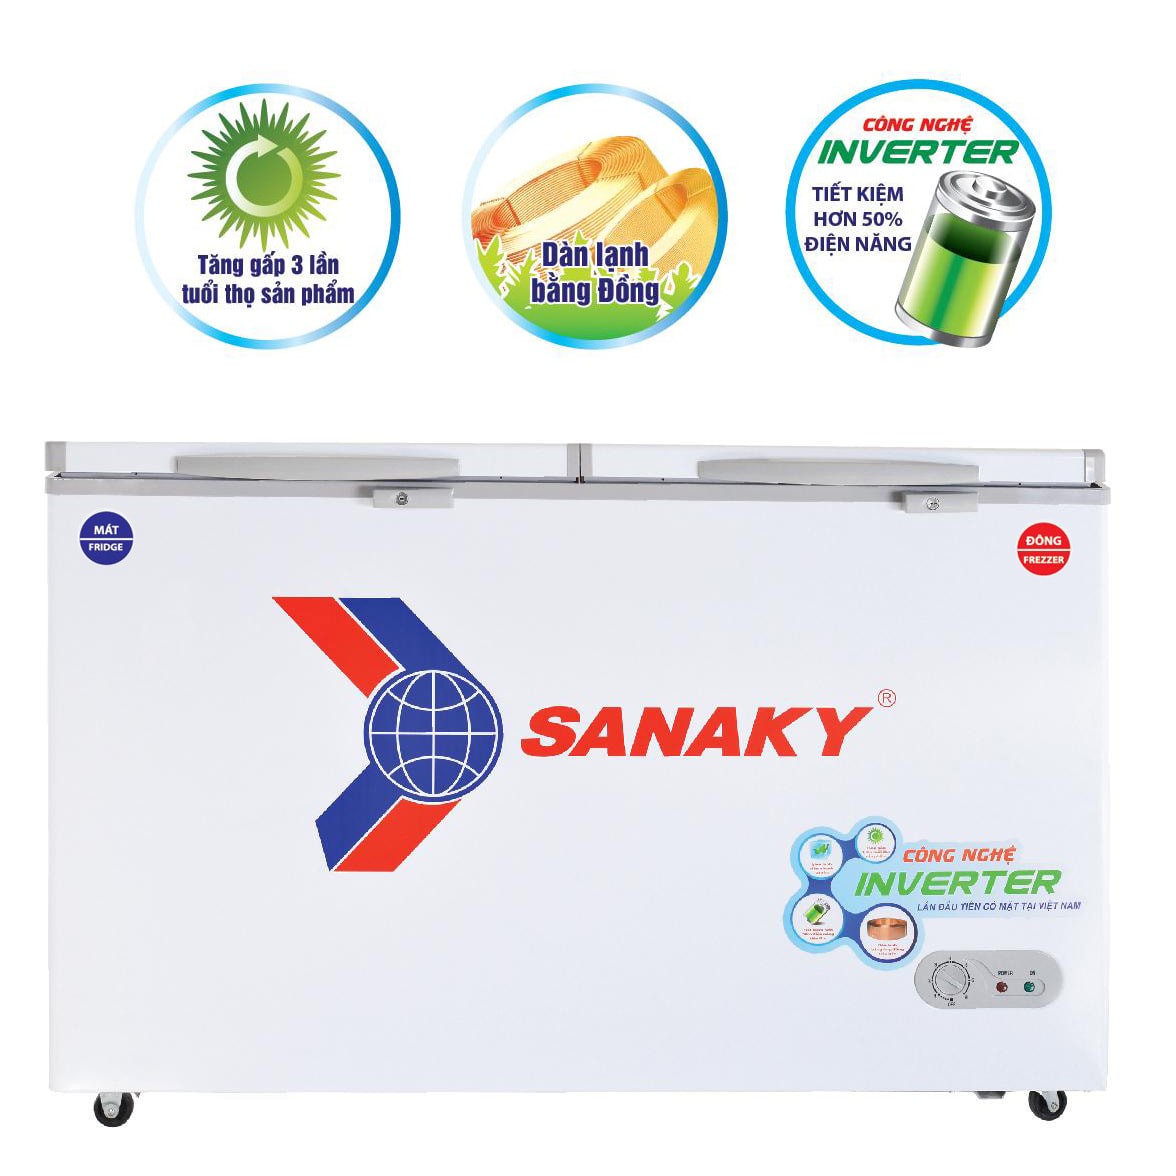 Tủ đông Sanaky Inverter 560 lít VH-5699W3